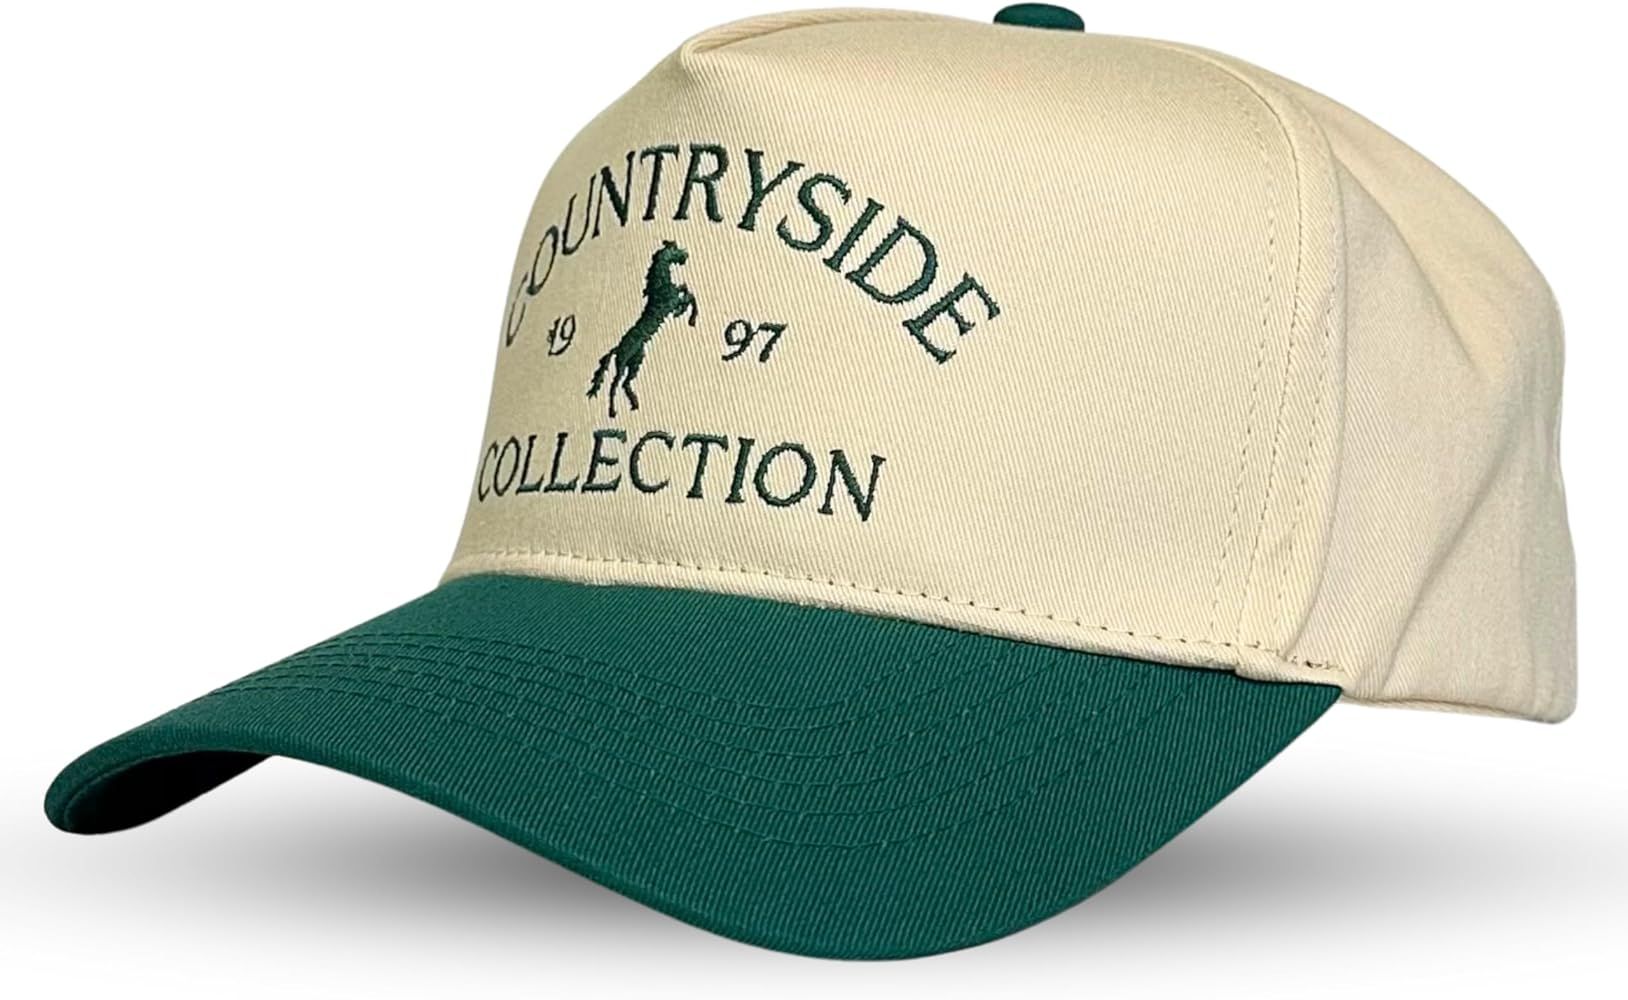 Vintage Trucker Hat | Country Cowboy Cute Preppy Retro Western Trucker Hats | Men Women Trendy Sn... | Amazon (US)